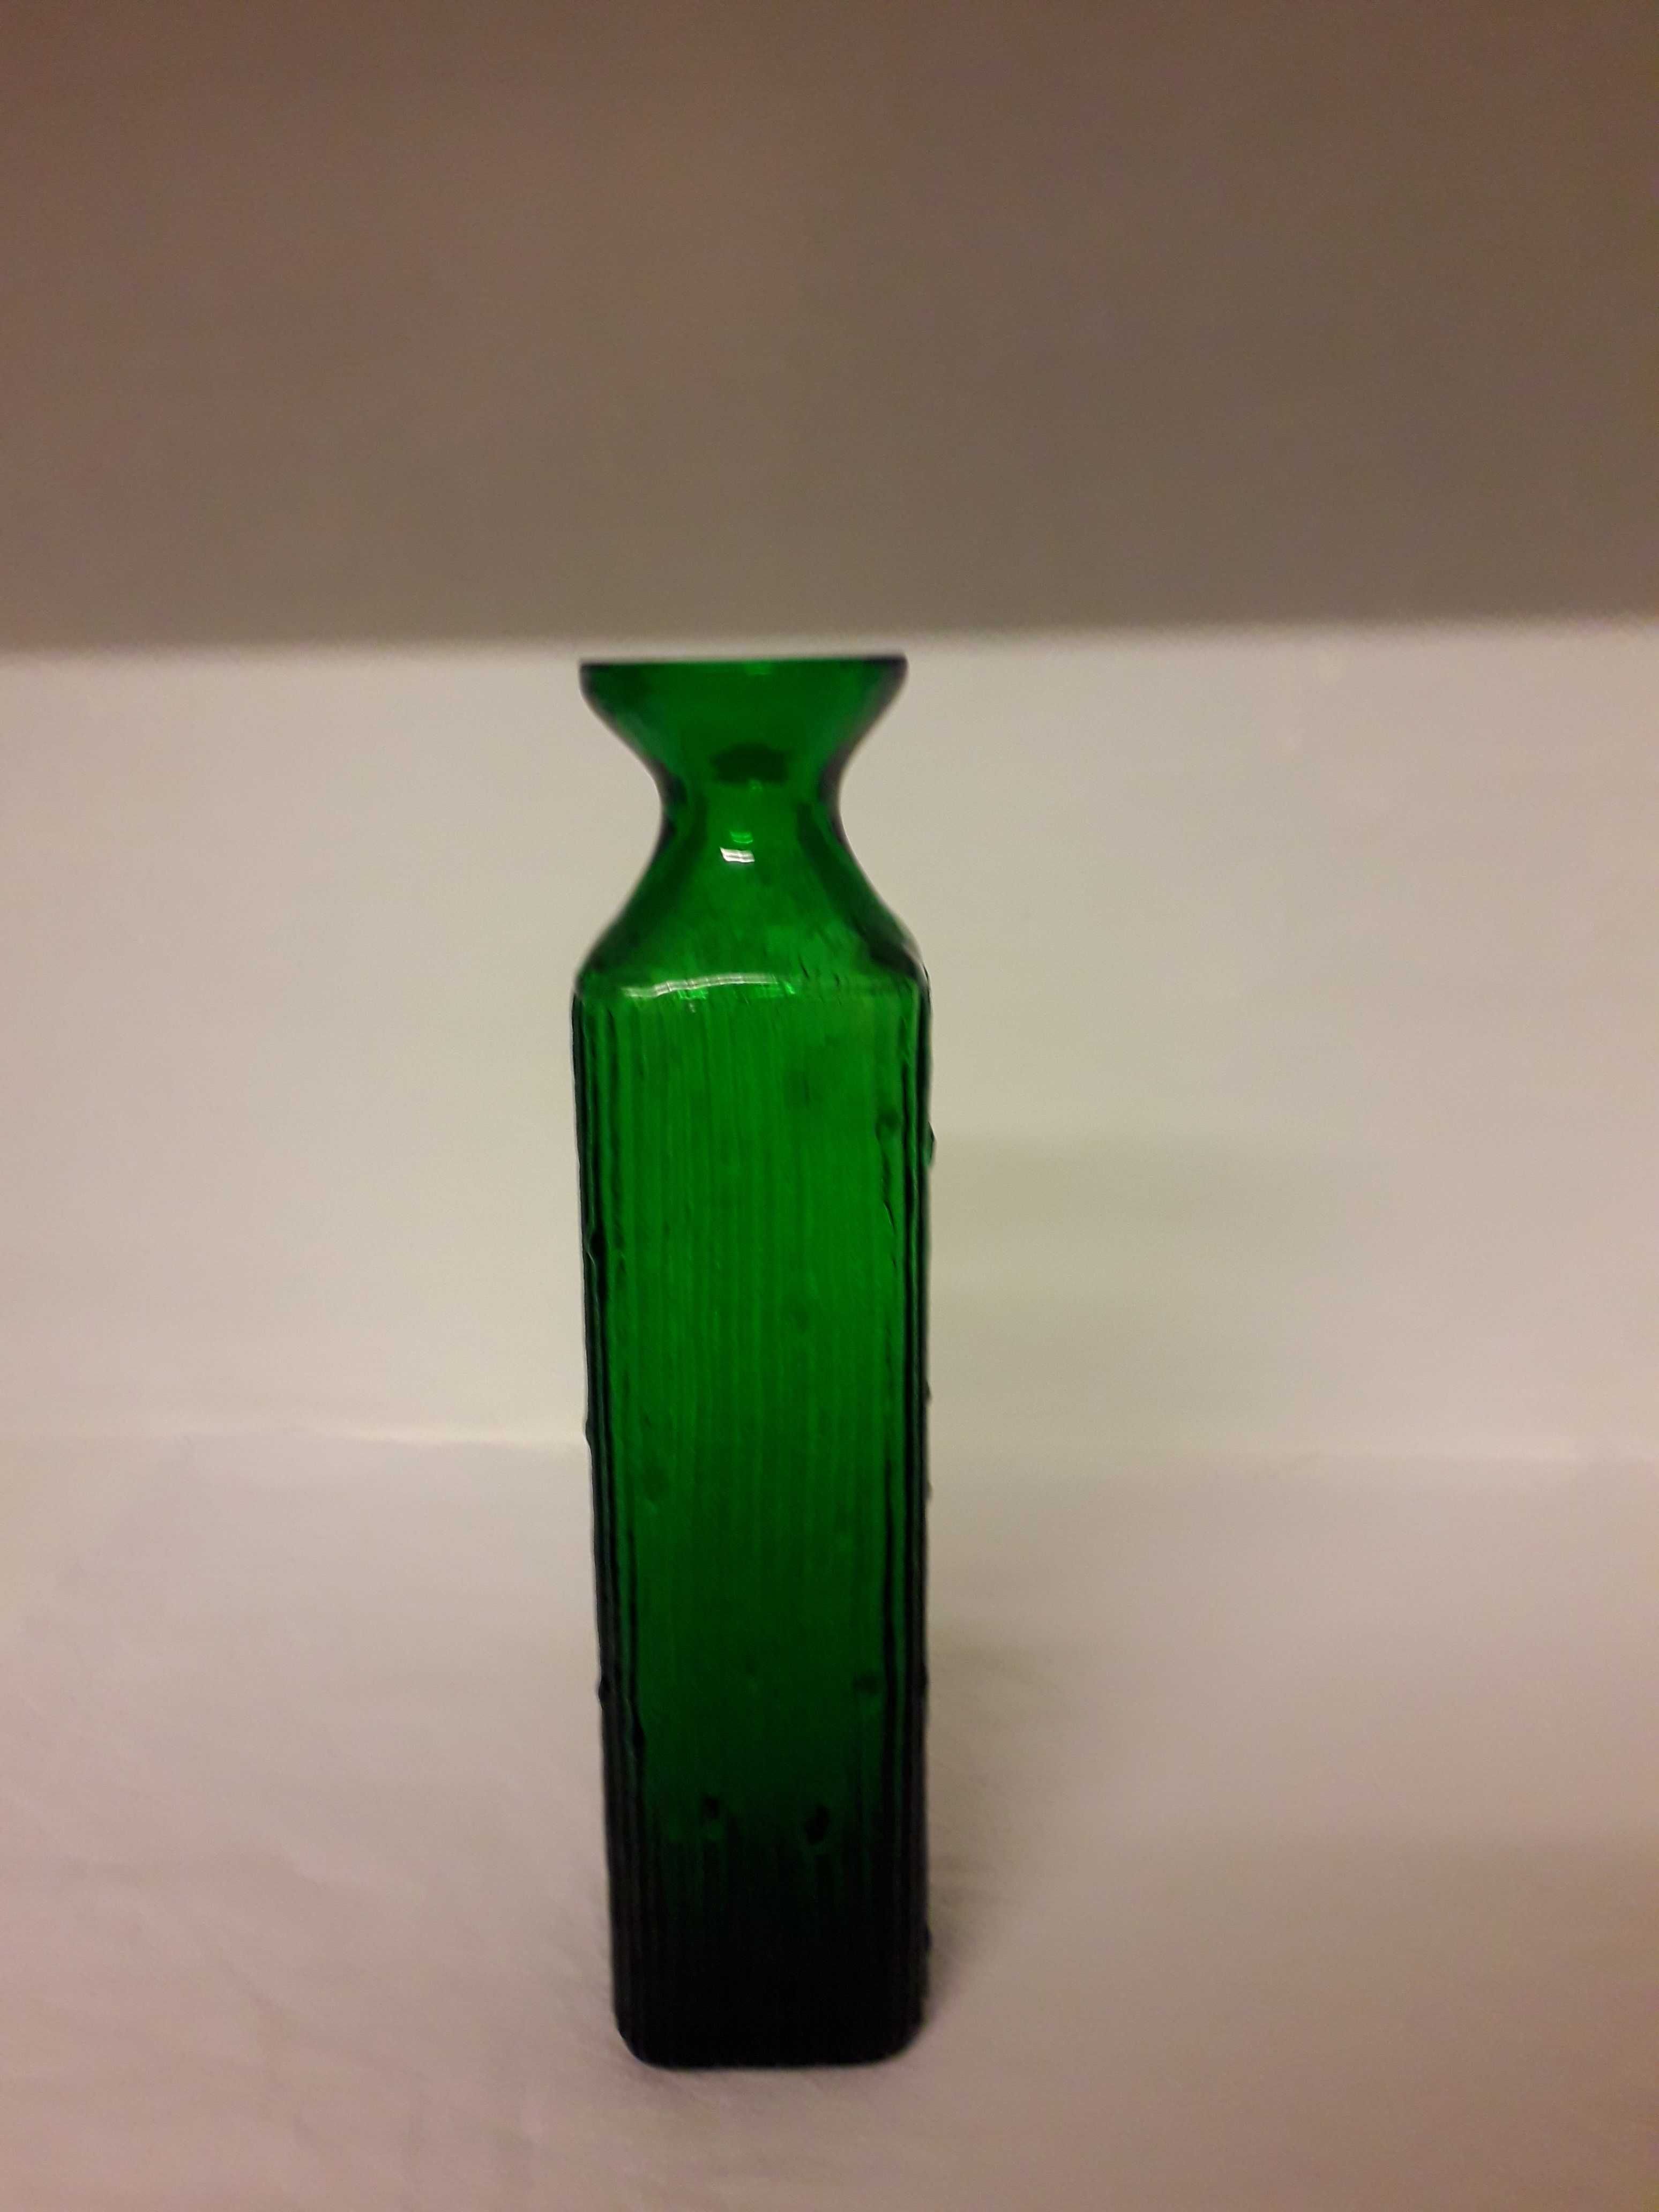 Szmaragdowa butla-wazon jak pieniek szkło artystyczne.